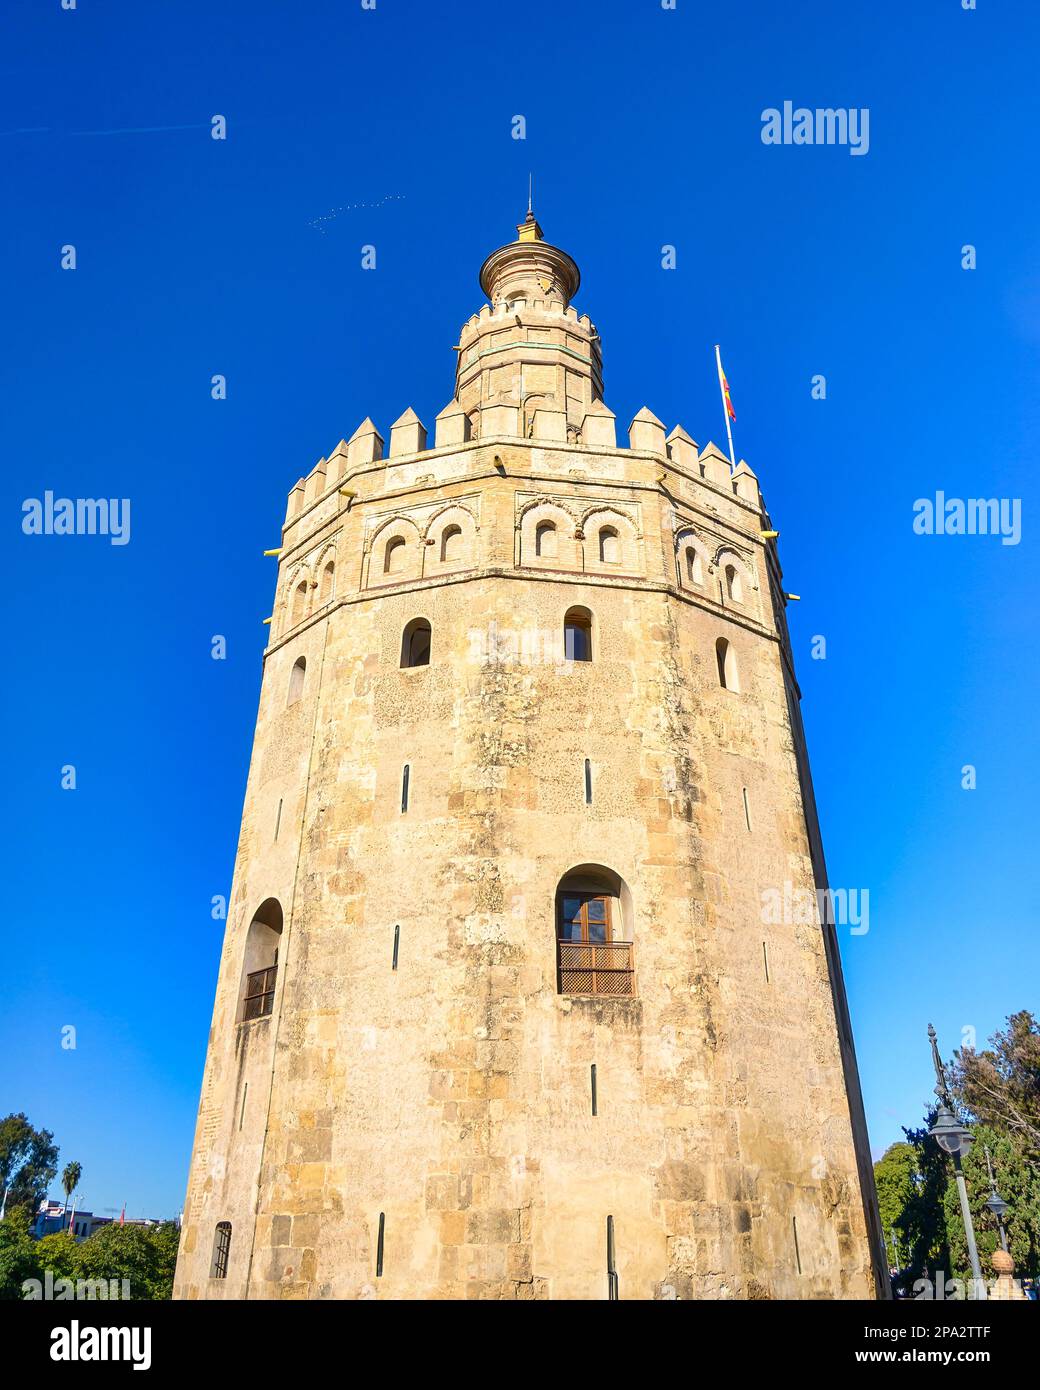 Fassade aus dem Kolonialstil mit blauem Himmel. Auf Spanisch heißt das Gebäude Torre del Oro. Stockfoto